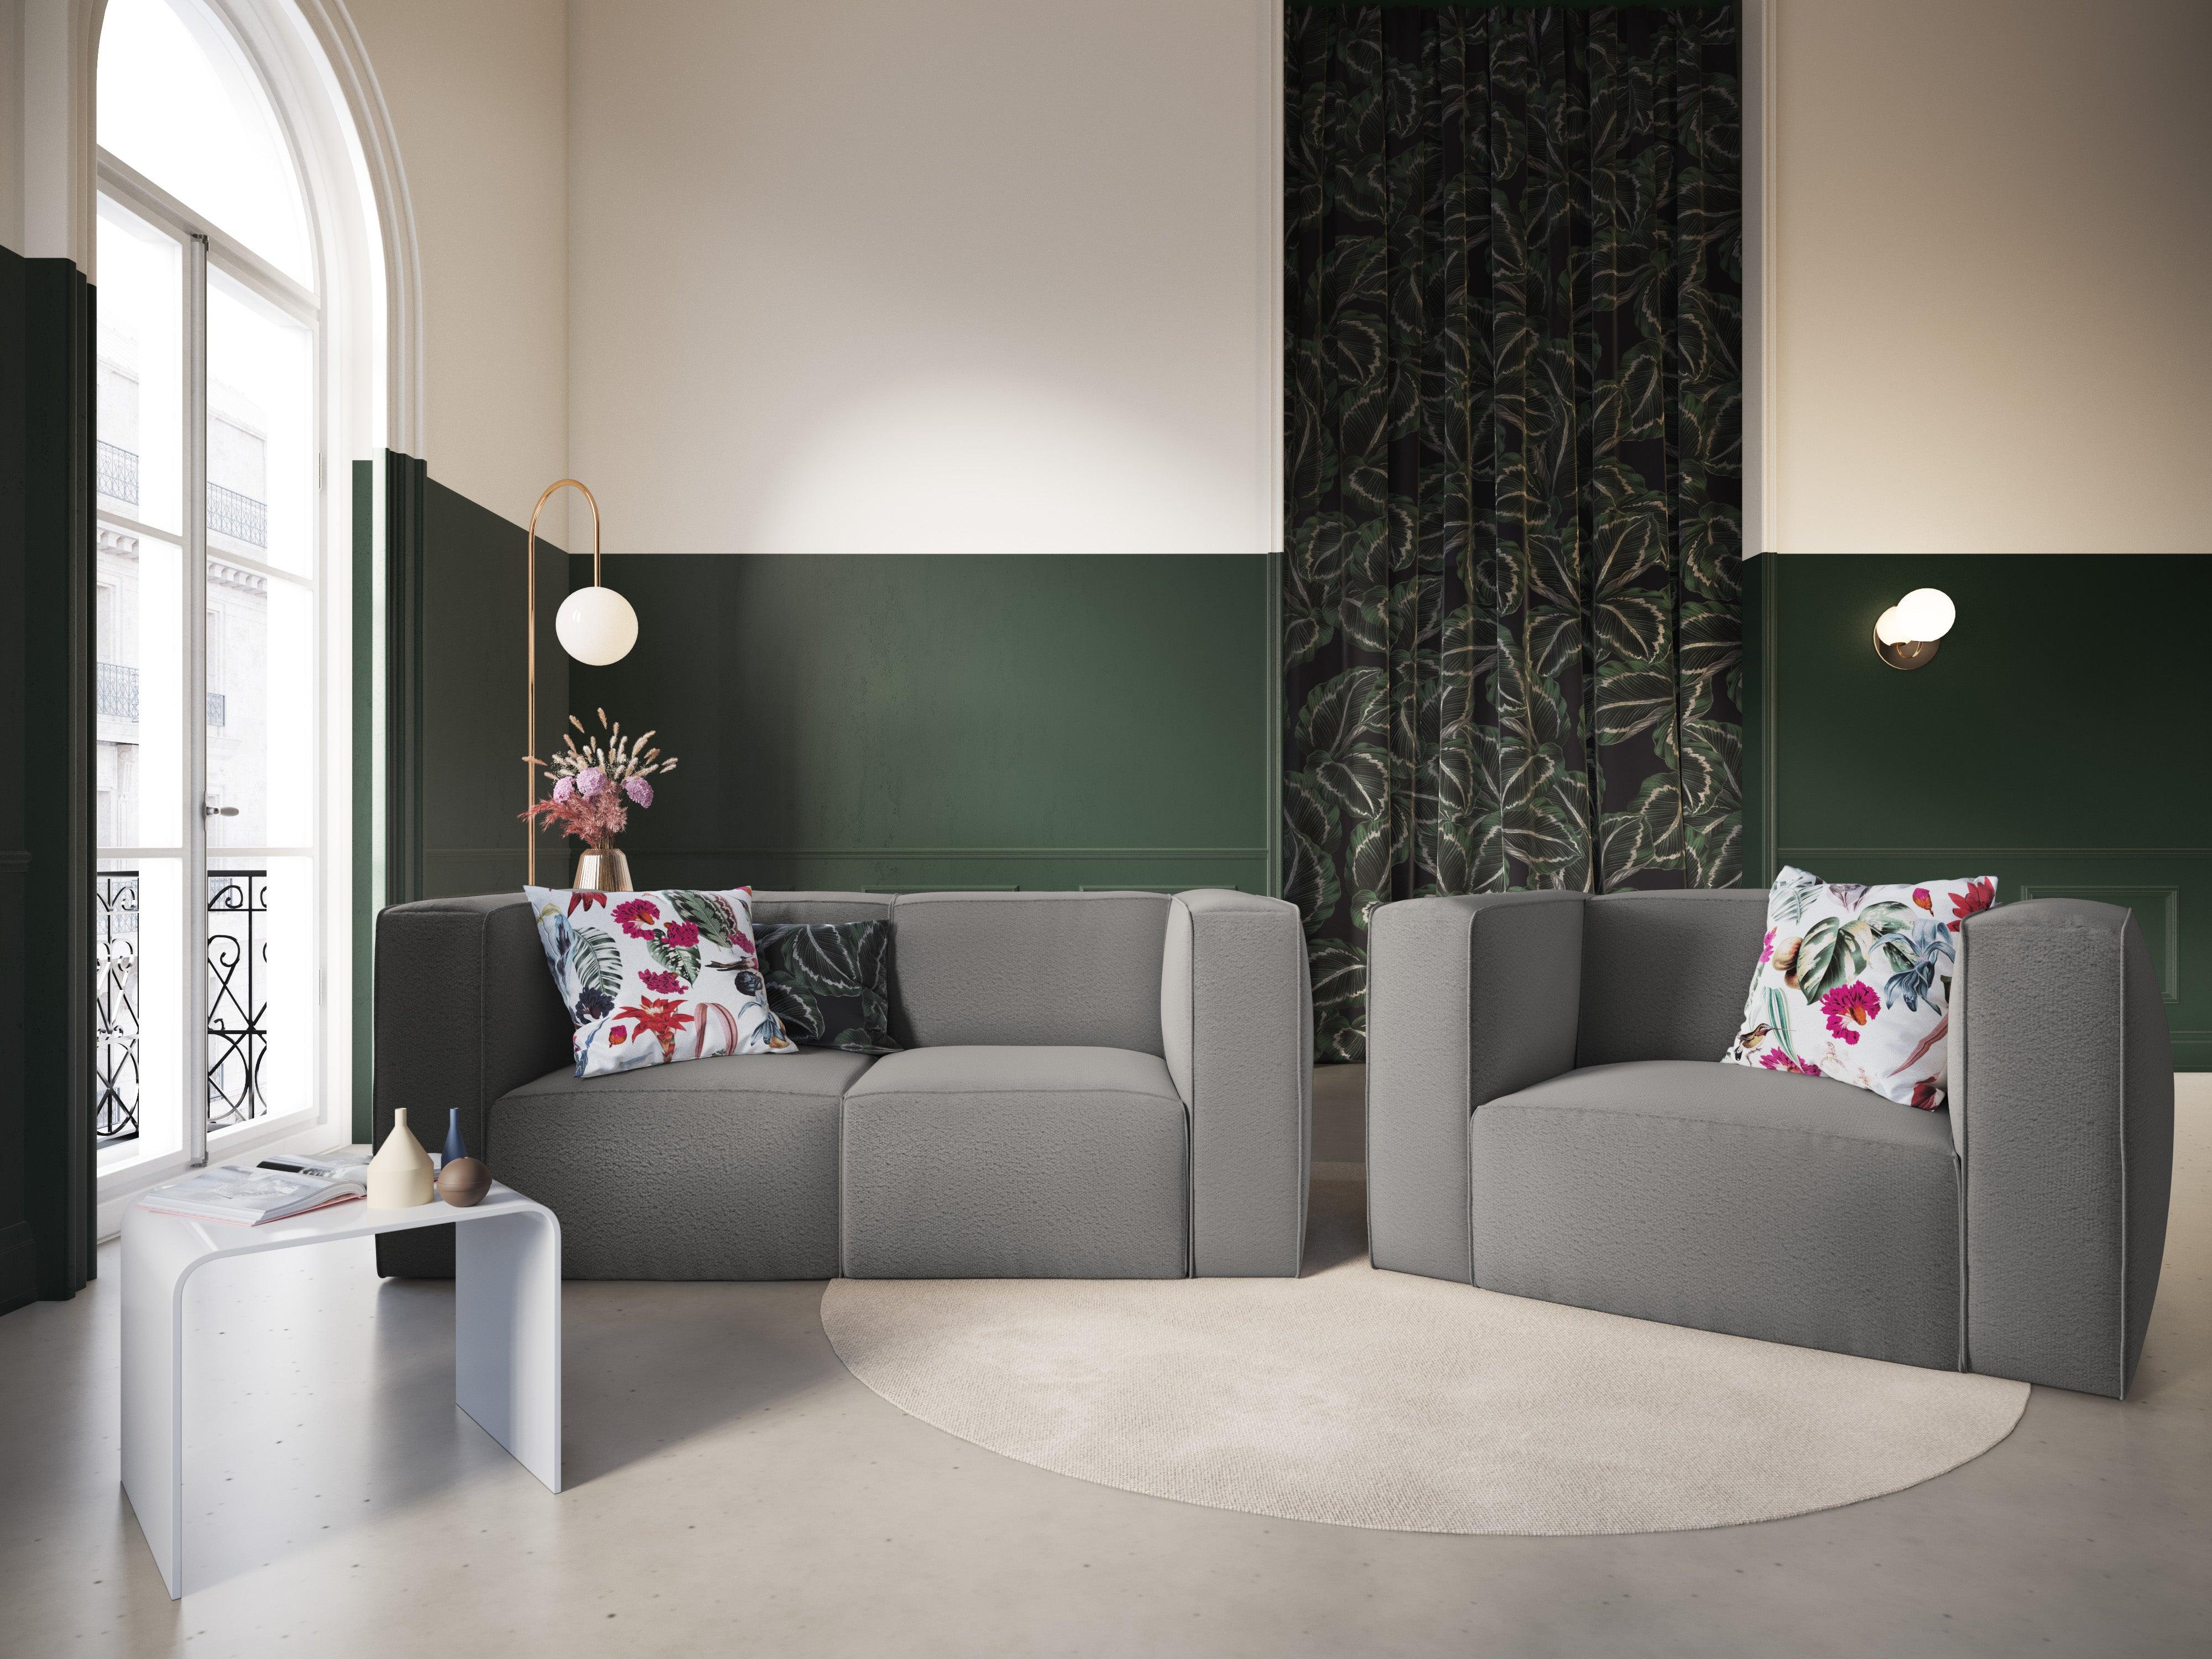 Sofa w tkaninie bouclé 2-osobowa MUSE szary CXL by Christian Lacroix    Eye on Design